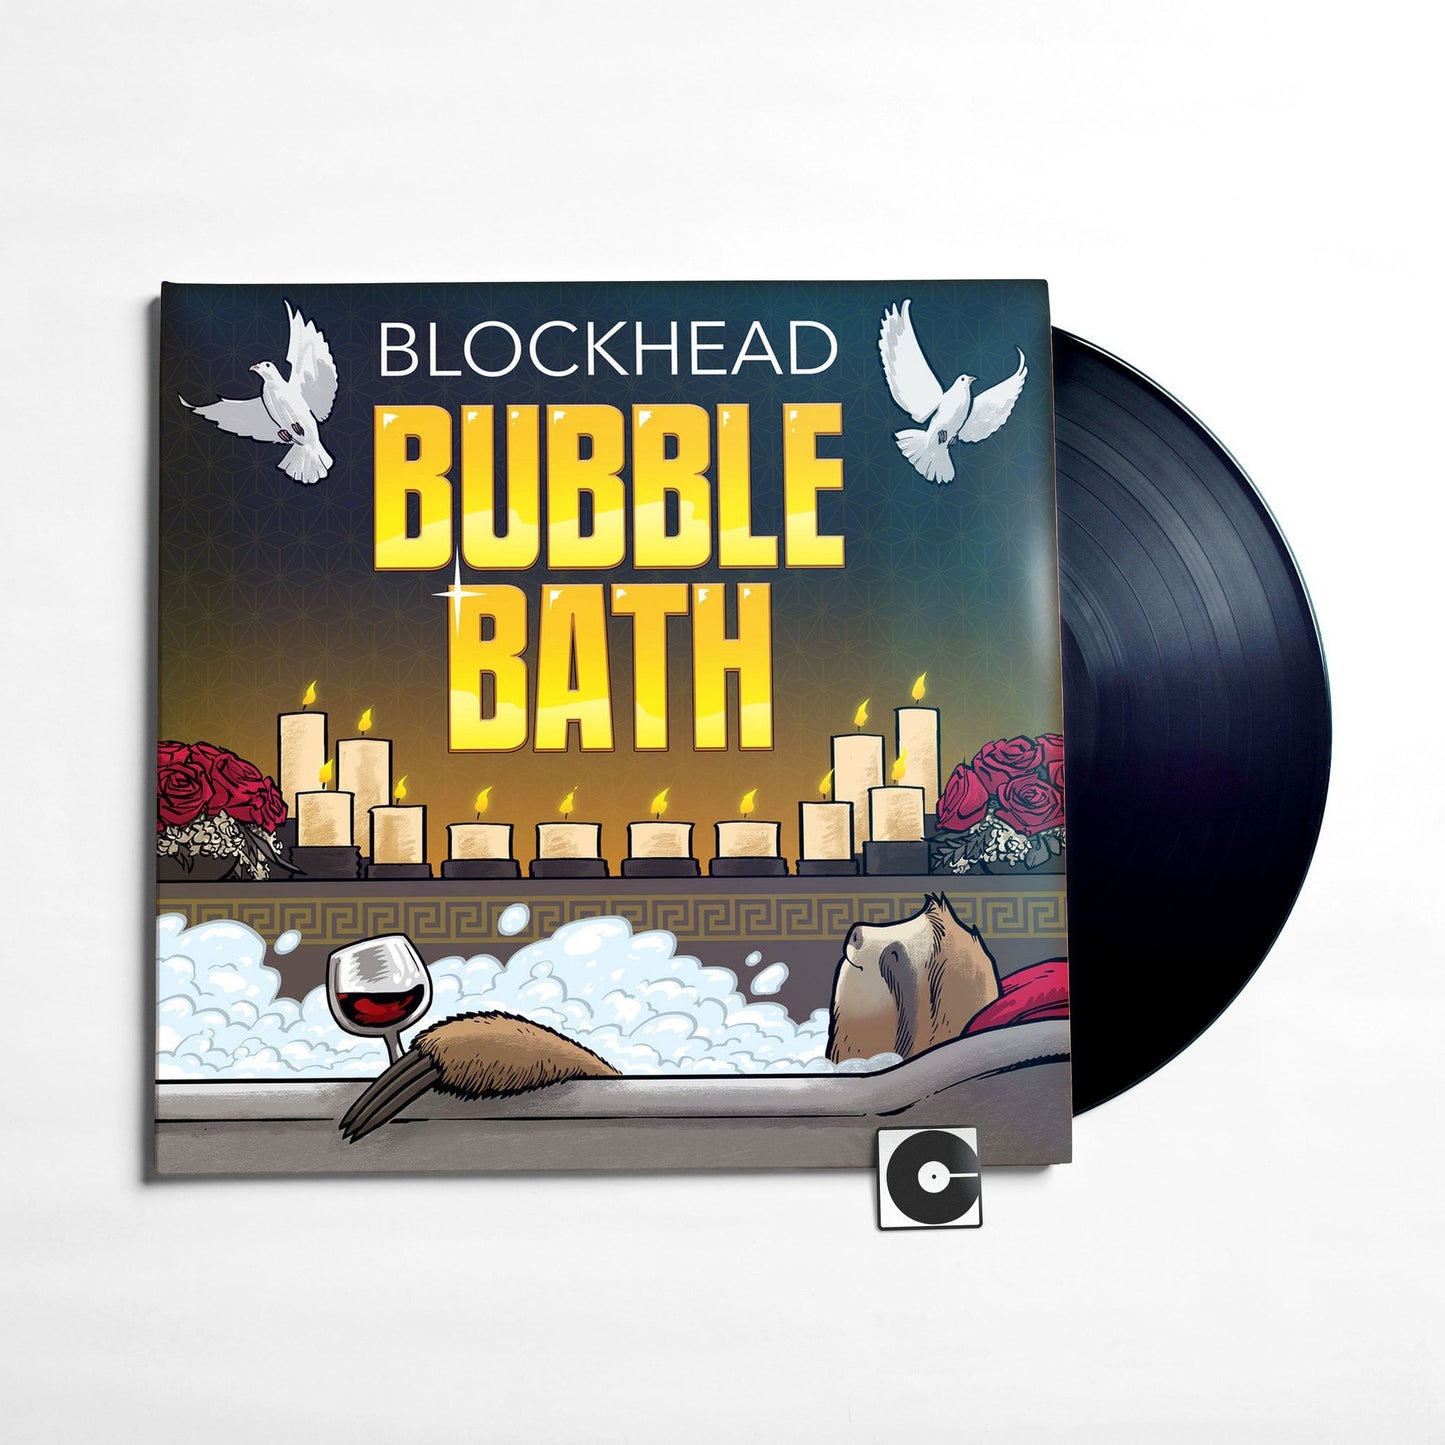 Blockhead - "Bubble Bath"